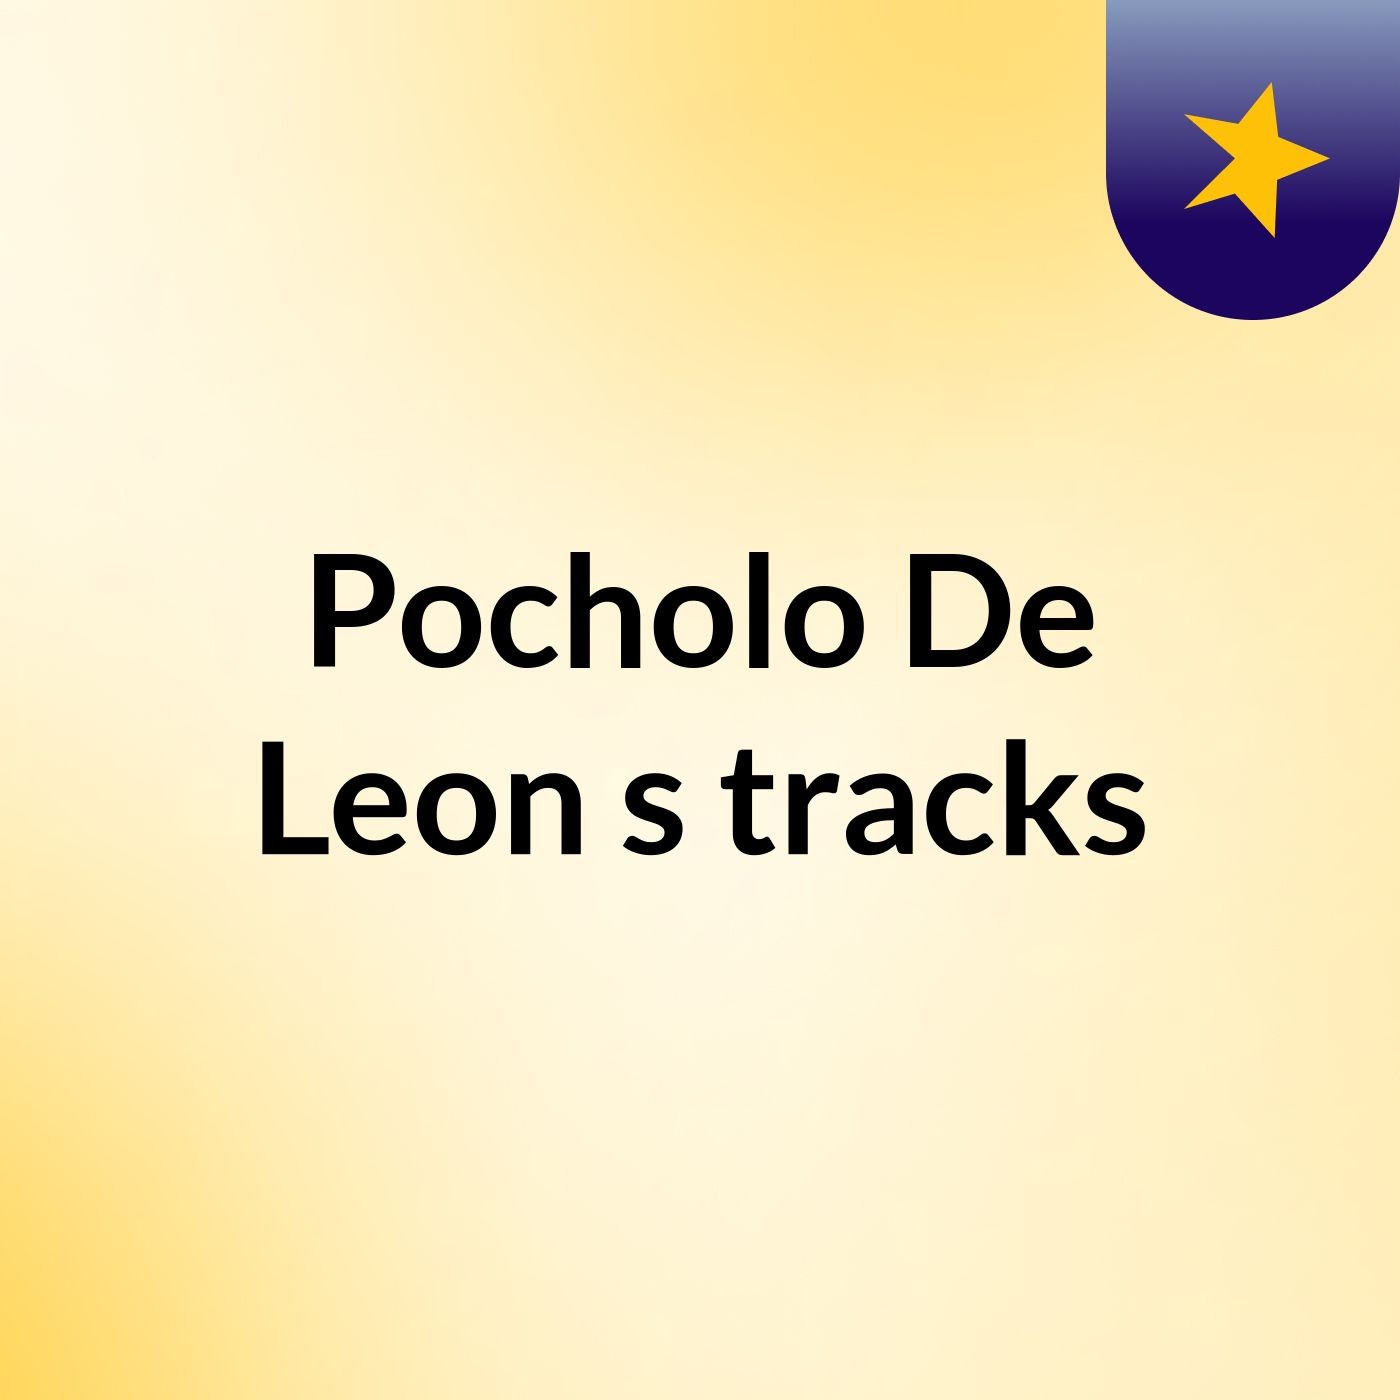 Pocholo De Leon's tracks